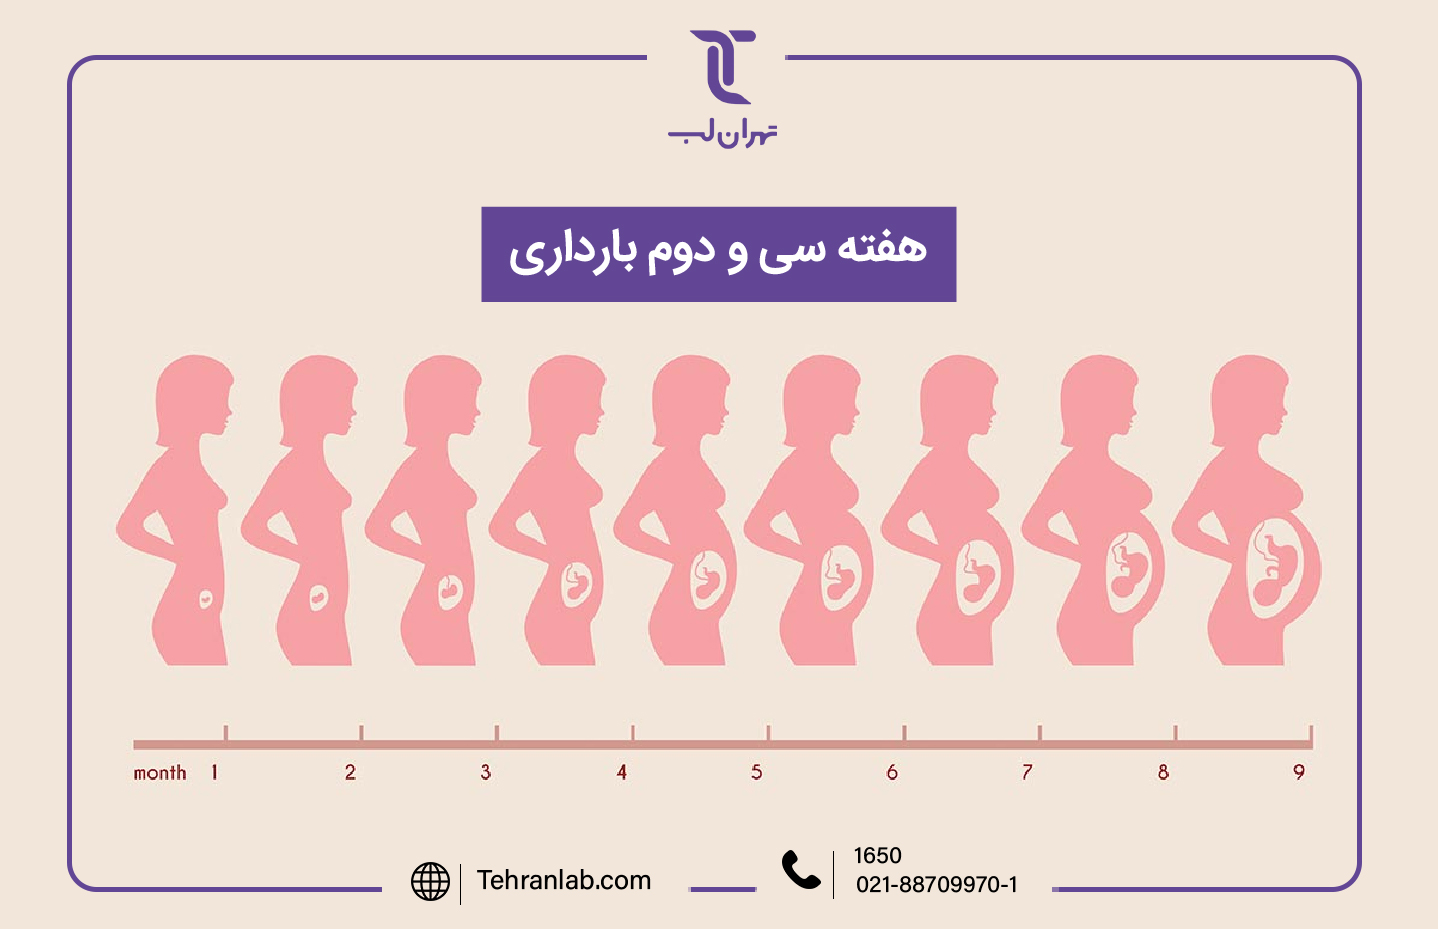 همه چیز درباره هفته سی و دوم (32) بارداری | آزمایشگاه تهران لب